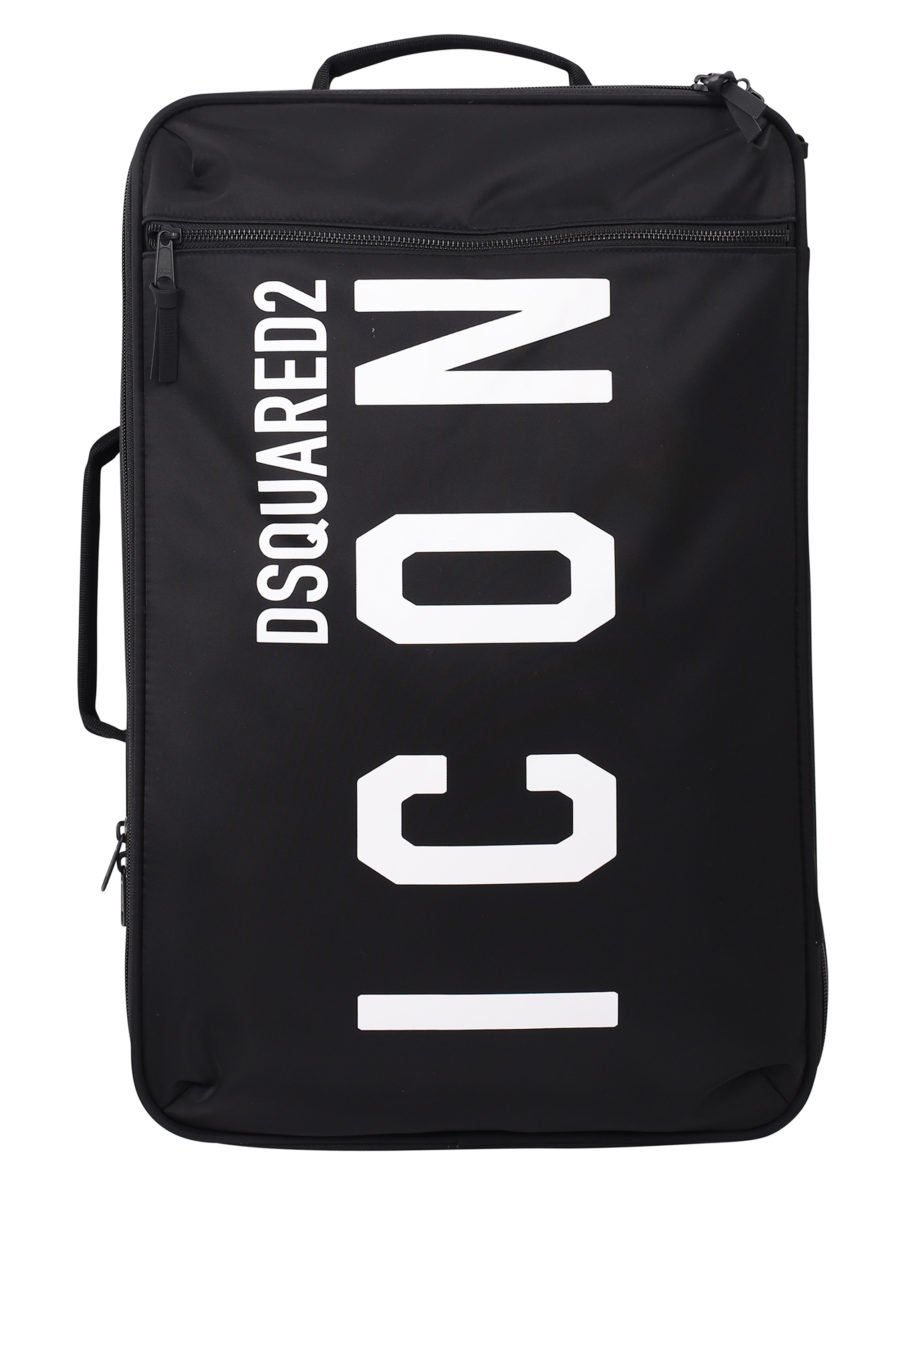 Black wheeled suitcase with "icon" logo - IMG 9703